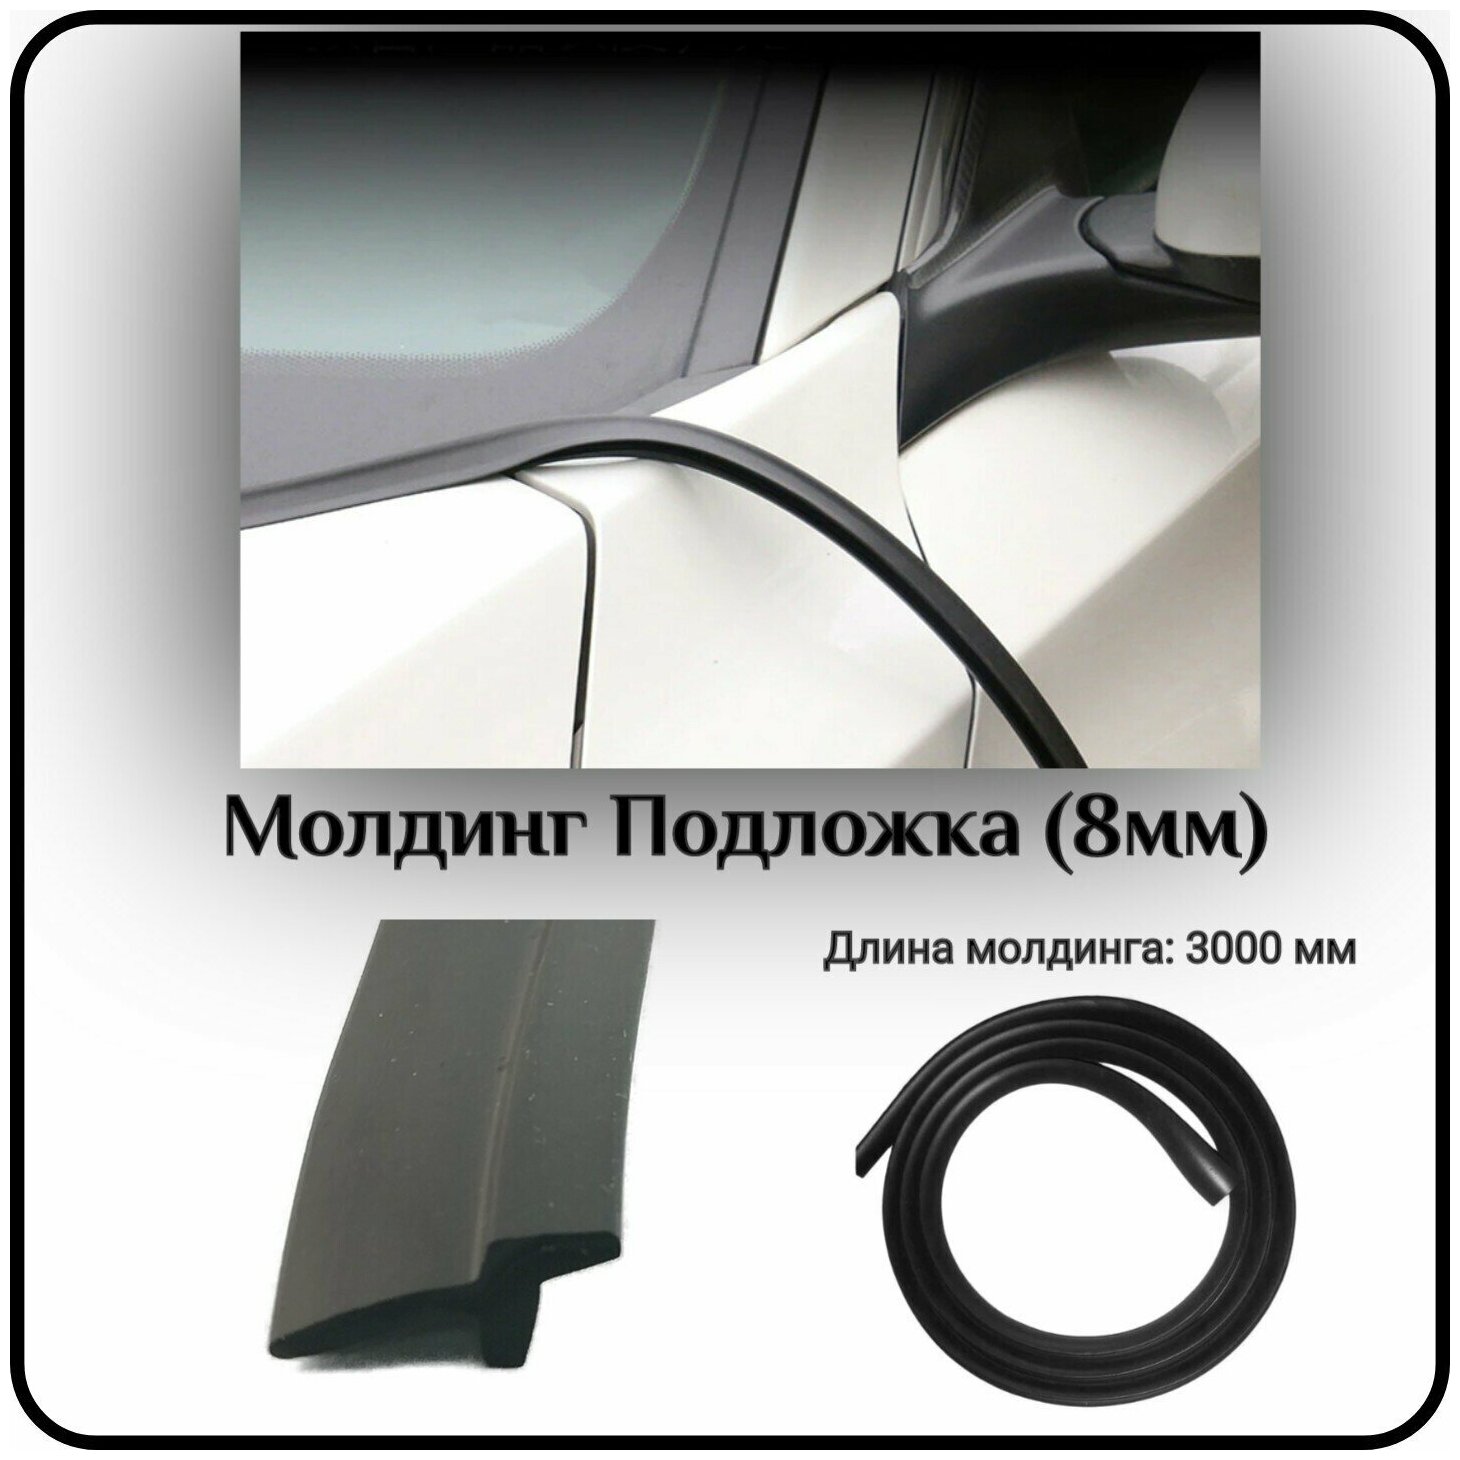 Уплотнитель кромки лобового стекла/молдинг для автомобиля L - 3000 Подложка (8мм) ( без скотча )